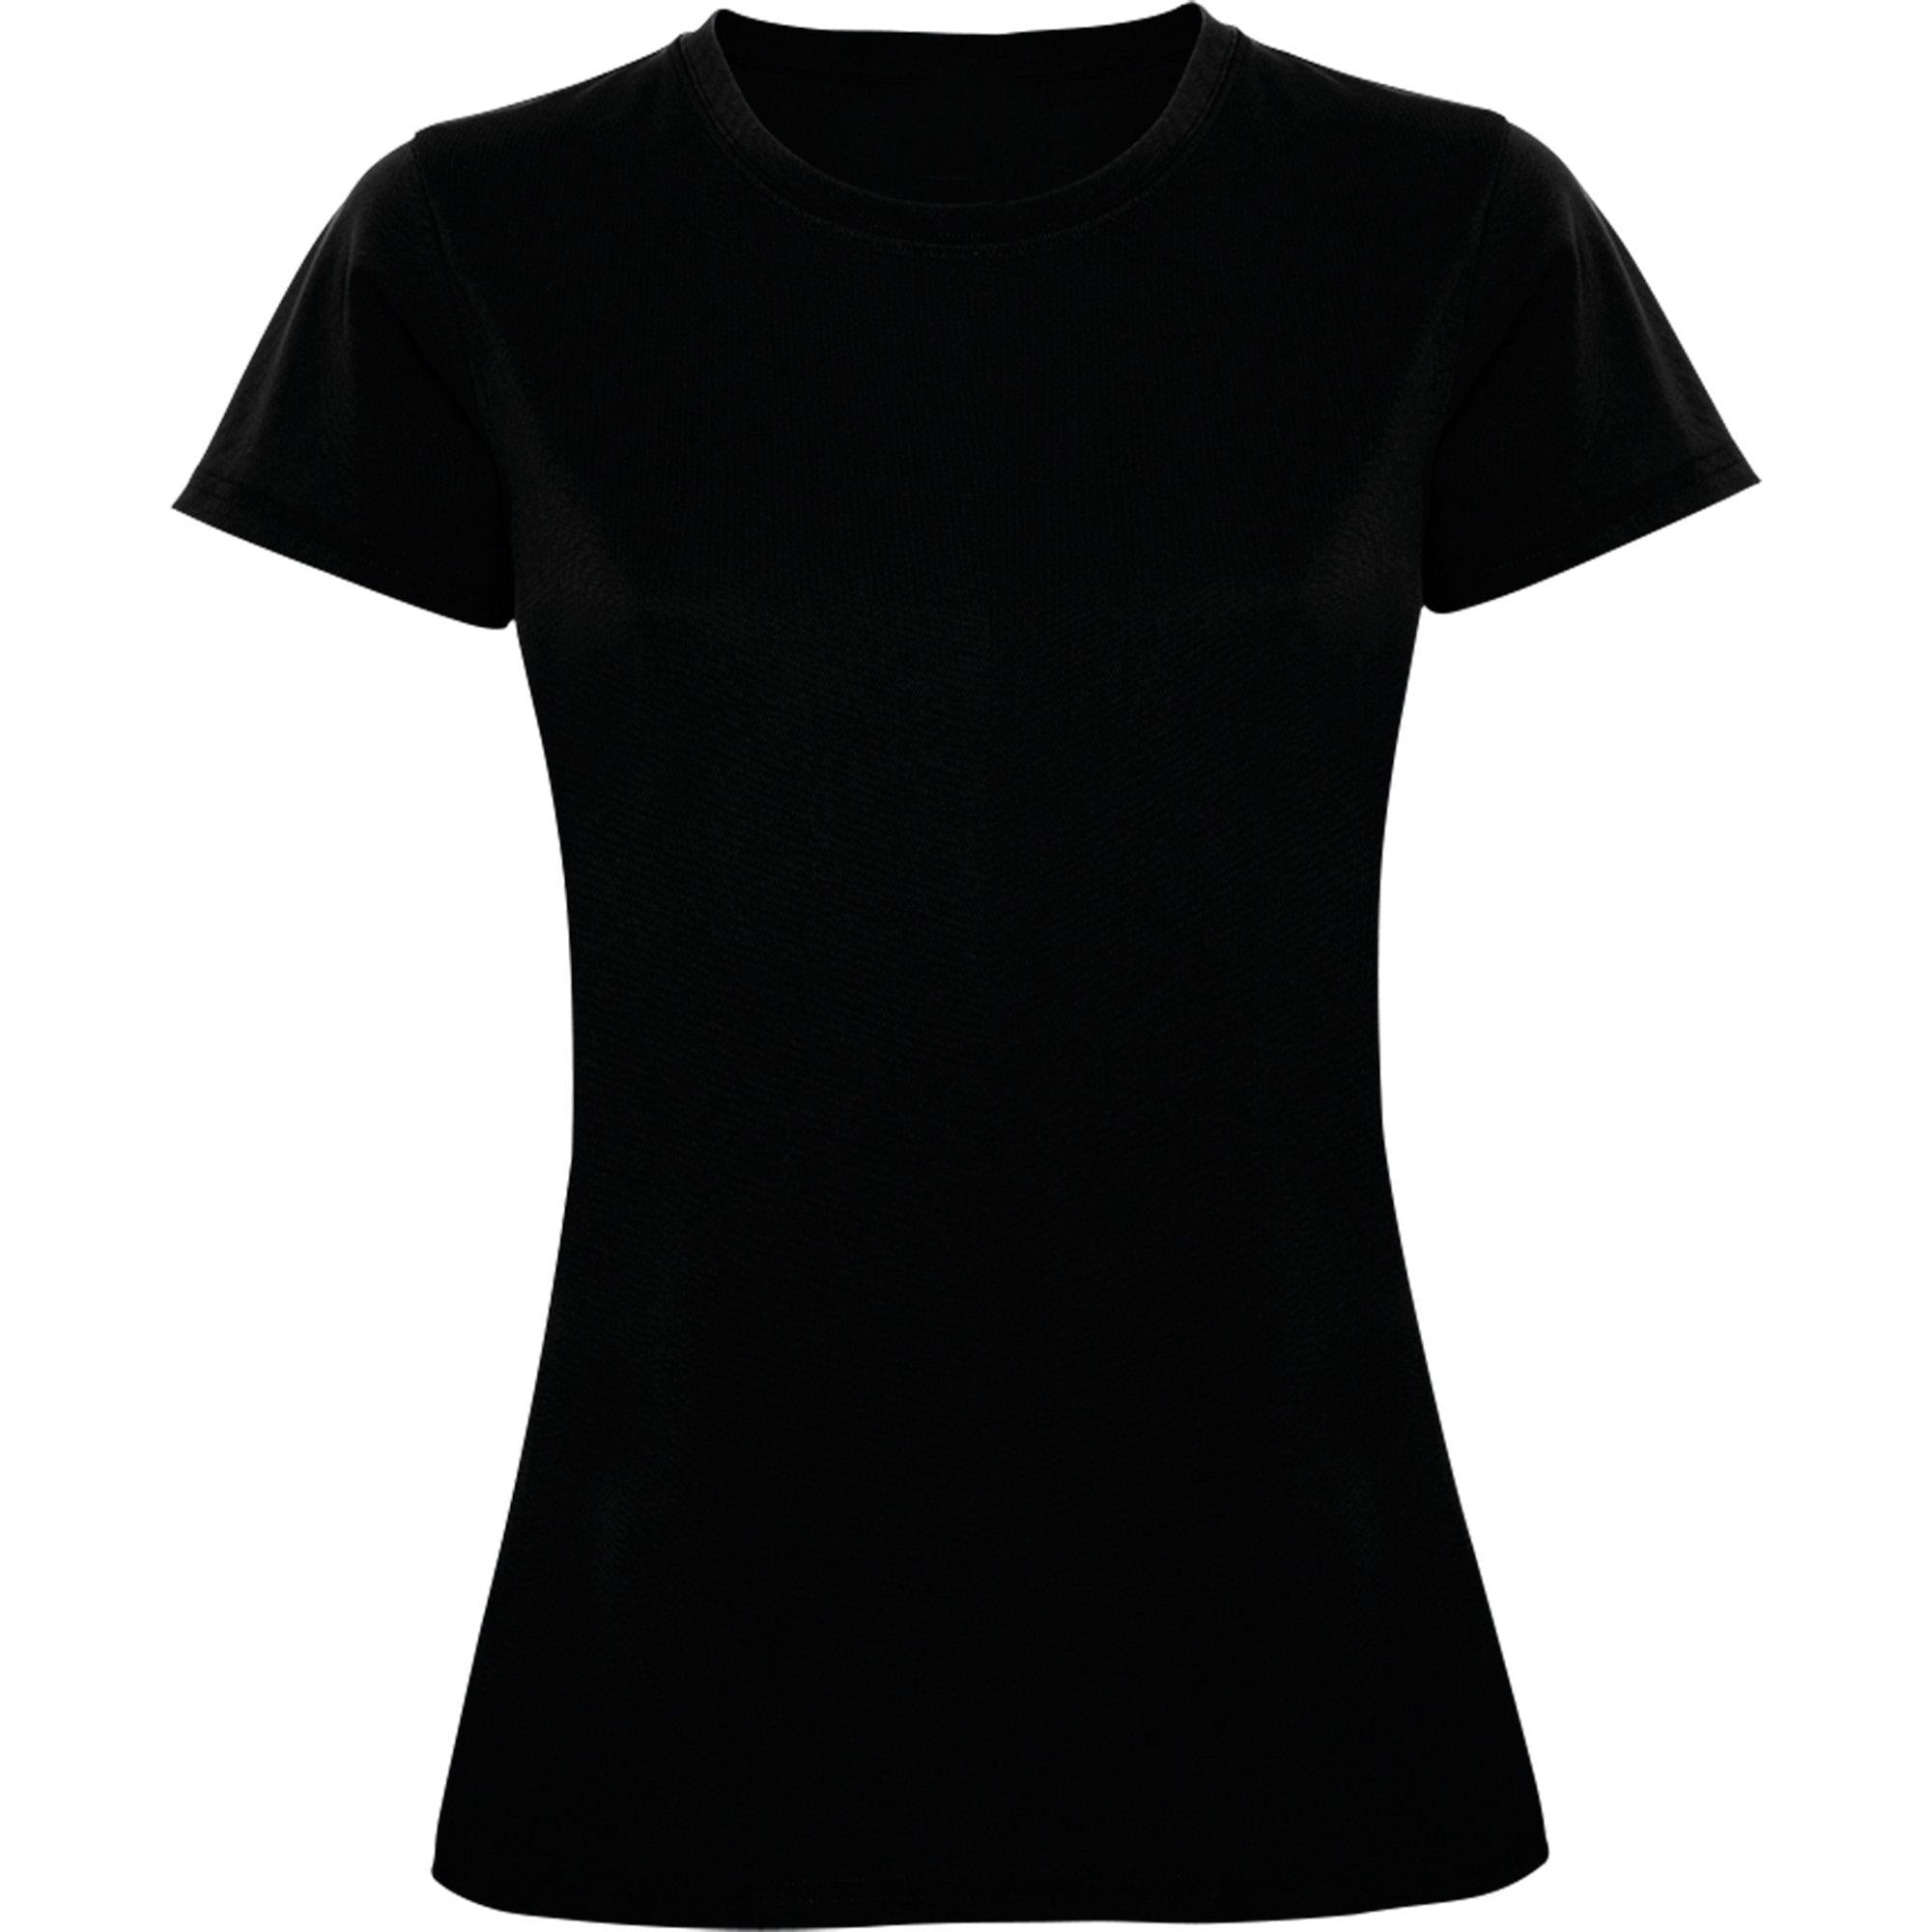 LabelFree LADY GO SPORT - Fitness T-Shirt - JA Profil 